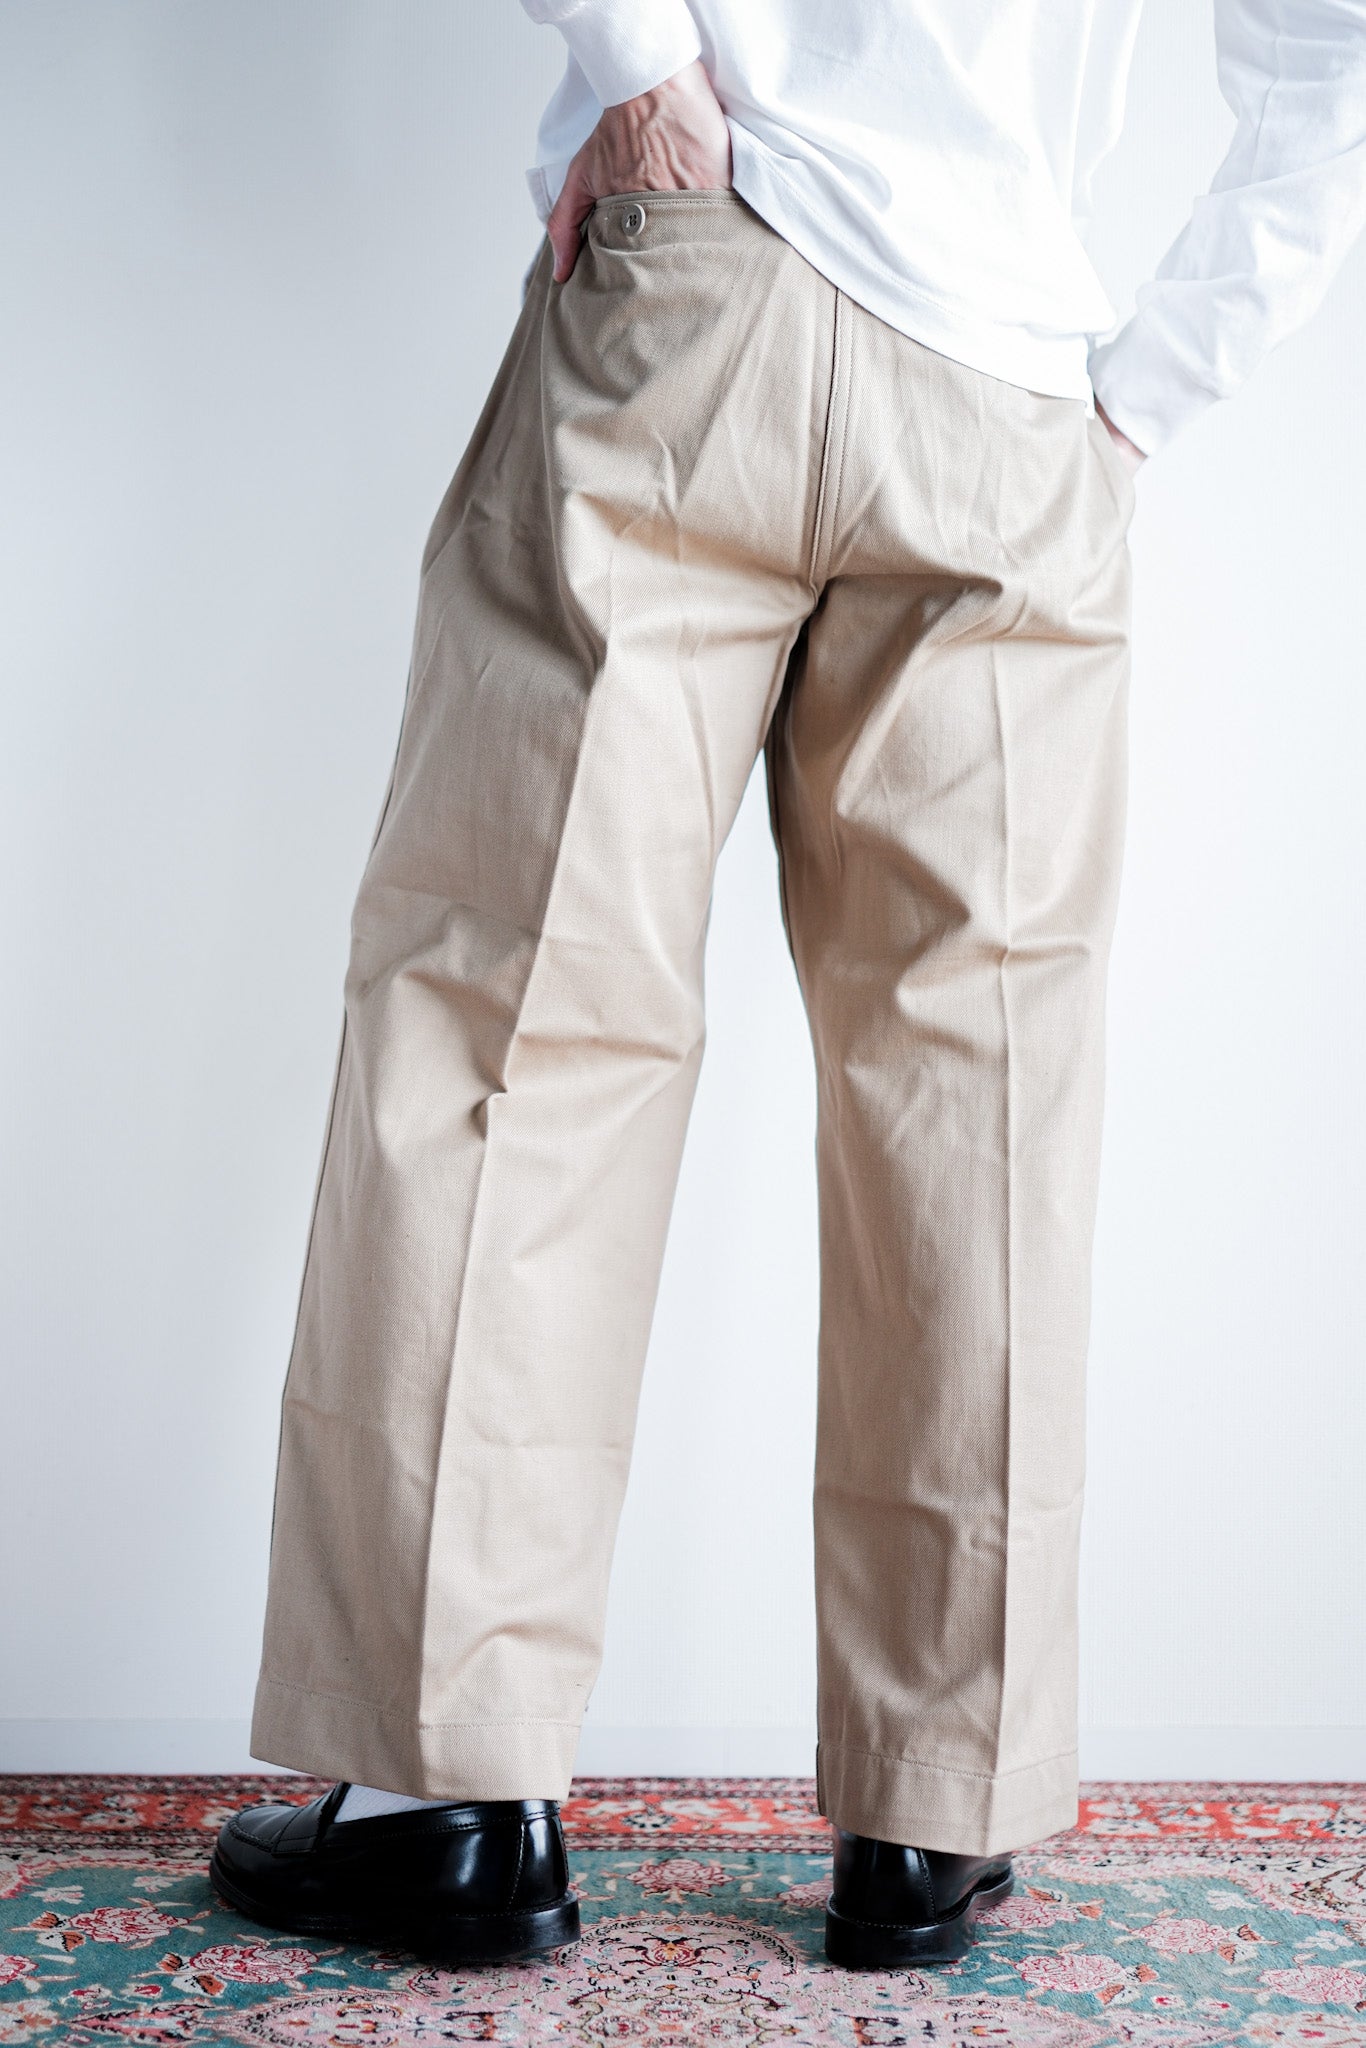 [~ 50's] Taille des pantalons chino de l'armée française M52.12 "Stock mort"